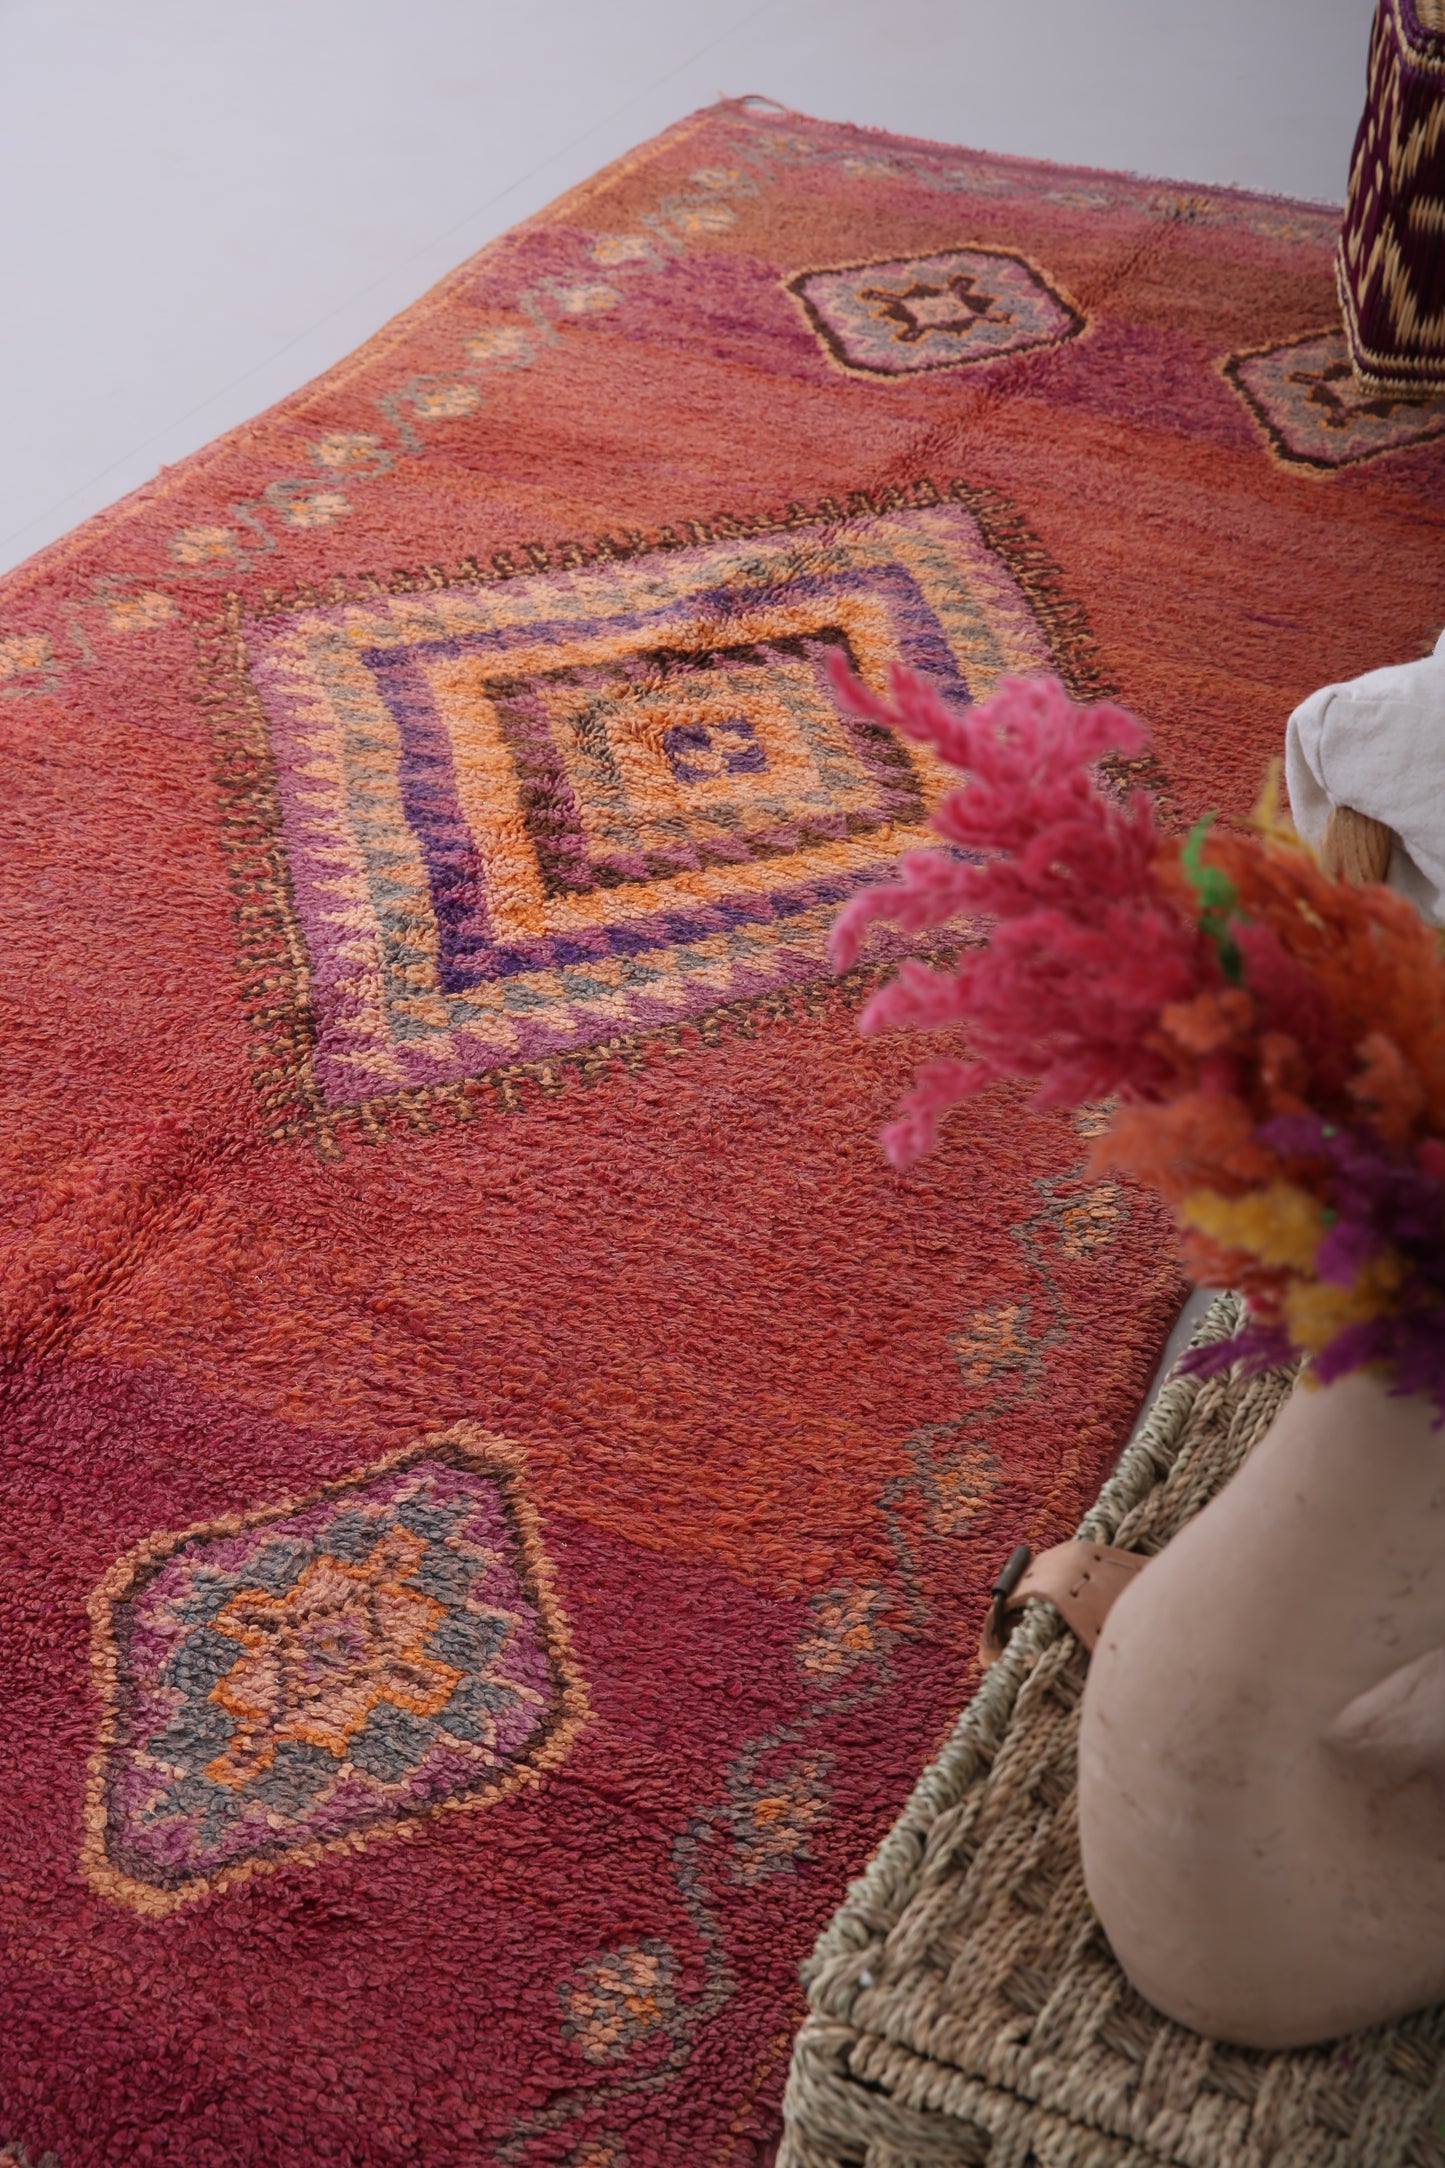 Handgemachter marokkanischer Läuferteppich 3,9 FT x 9,4 FT - roter Marokko Teppich - Vintage Tribal Teppich - handgemachter Berberteppich - alter Vintage Teppich - Boho Teppich